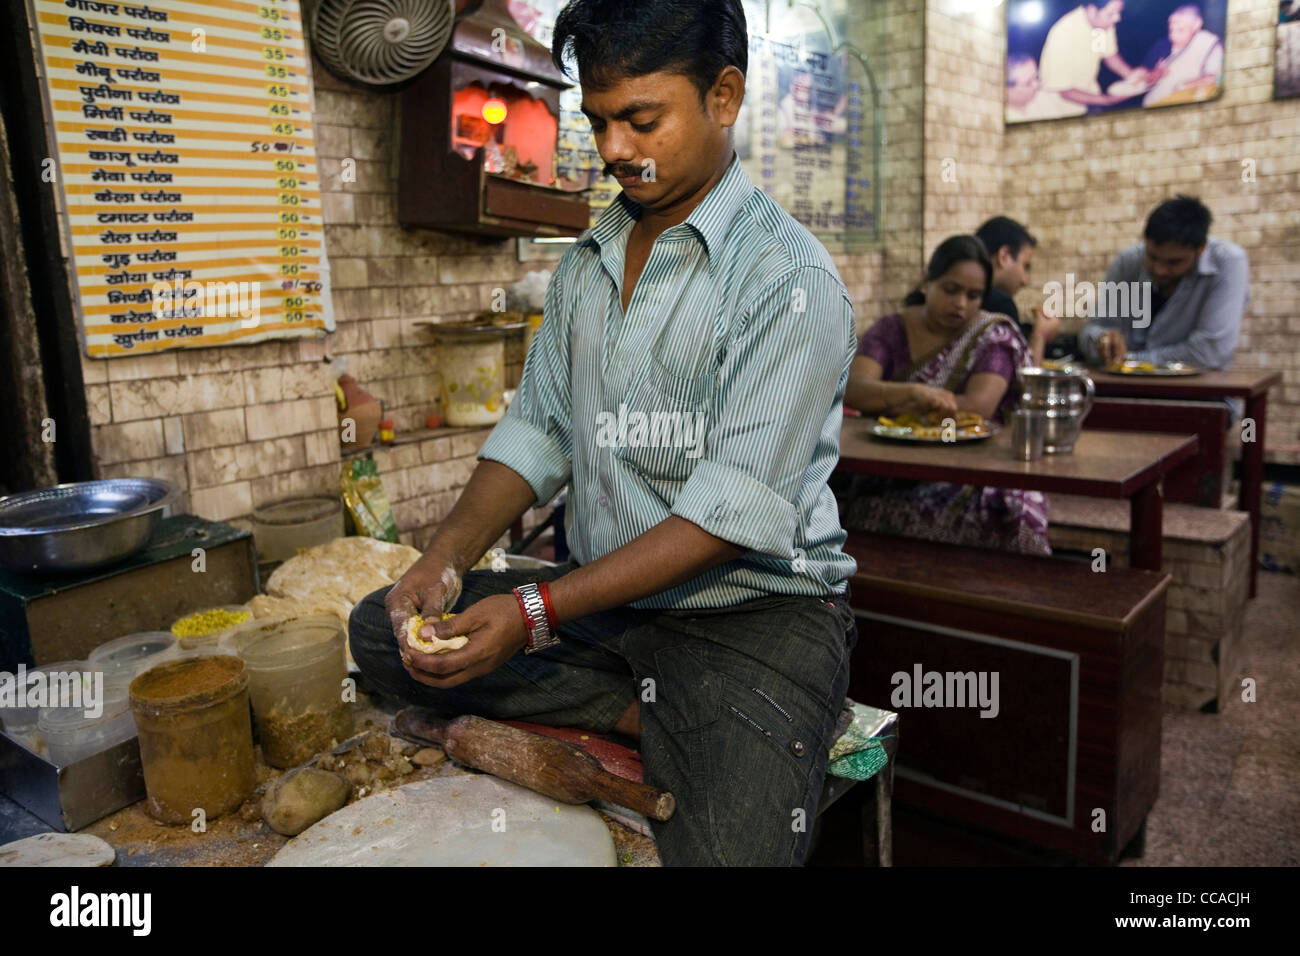 Ram Billas making paratha at Parawthe Wala restaurant in Old Delhi, India Stock Photo